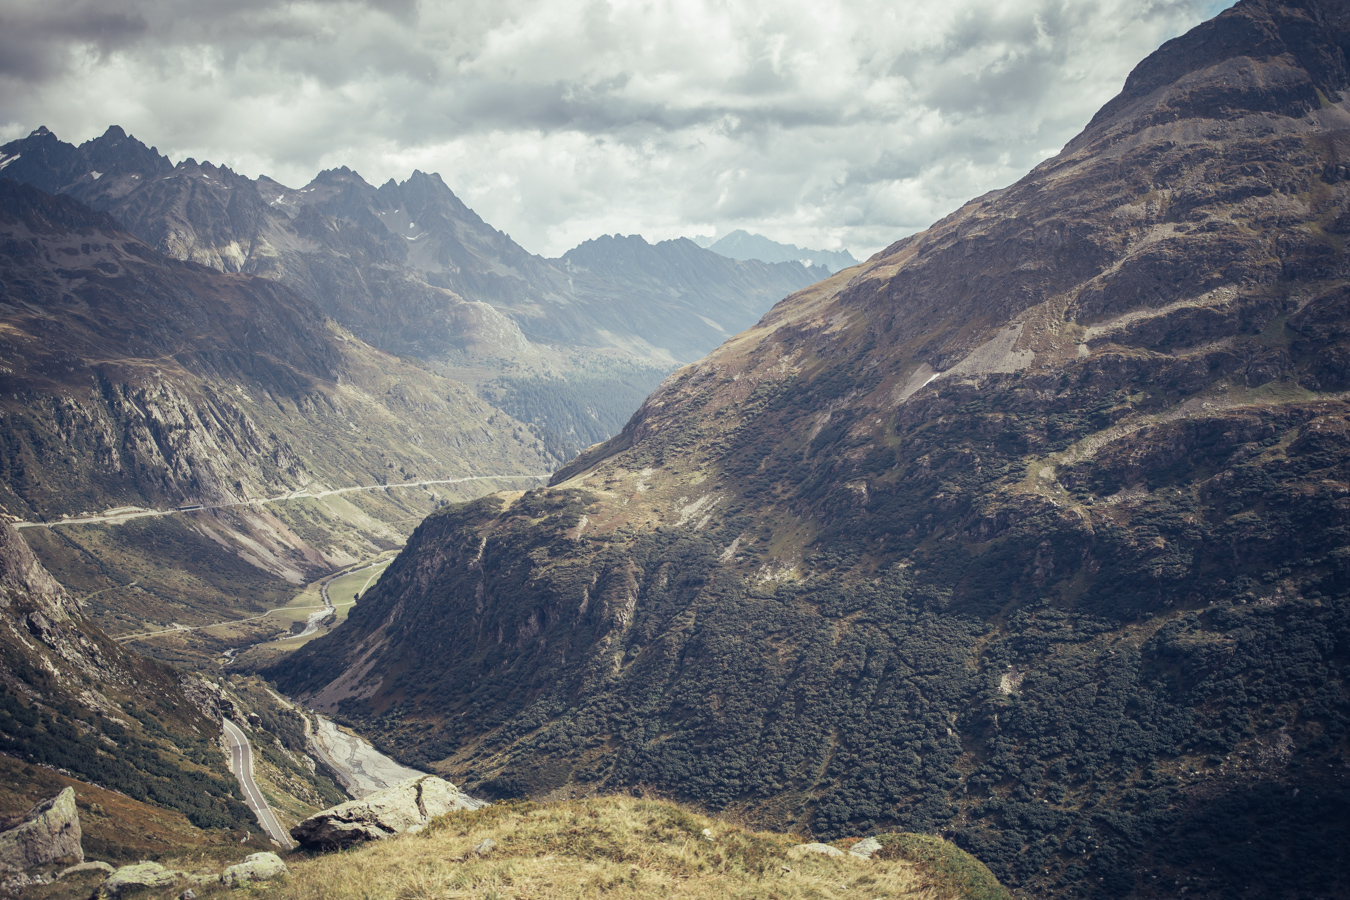 Photograph of Furka Pass, Switzerland by Alex Nichol